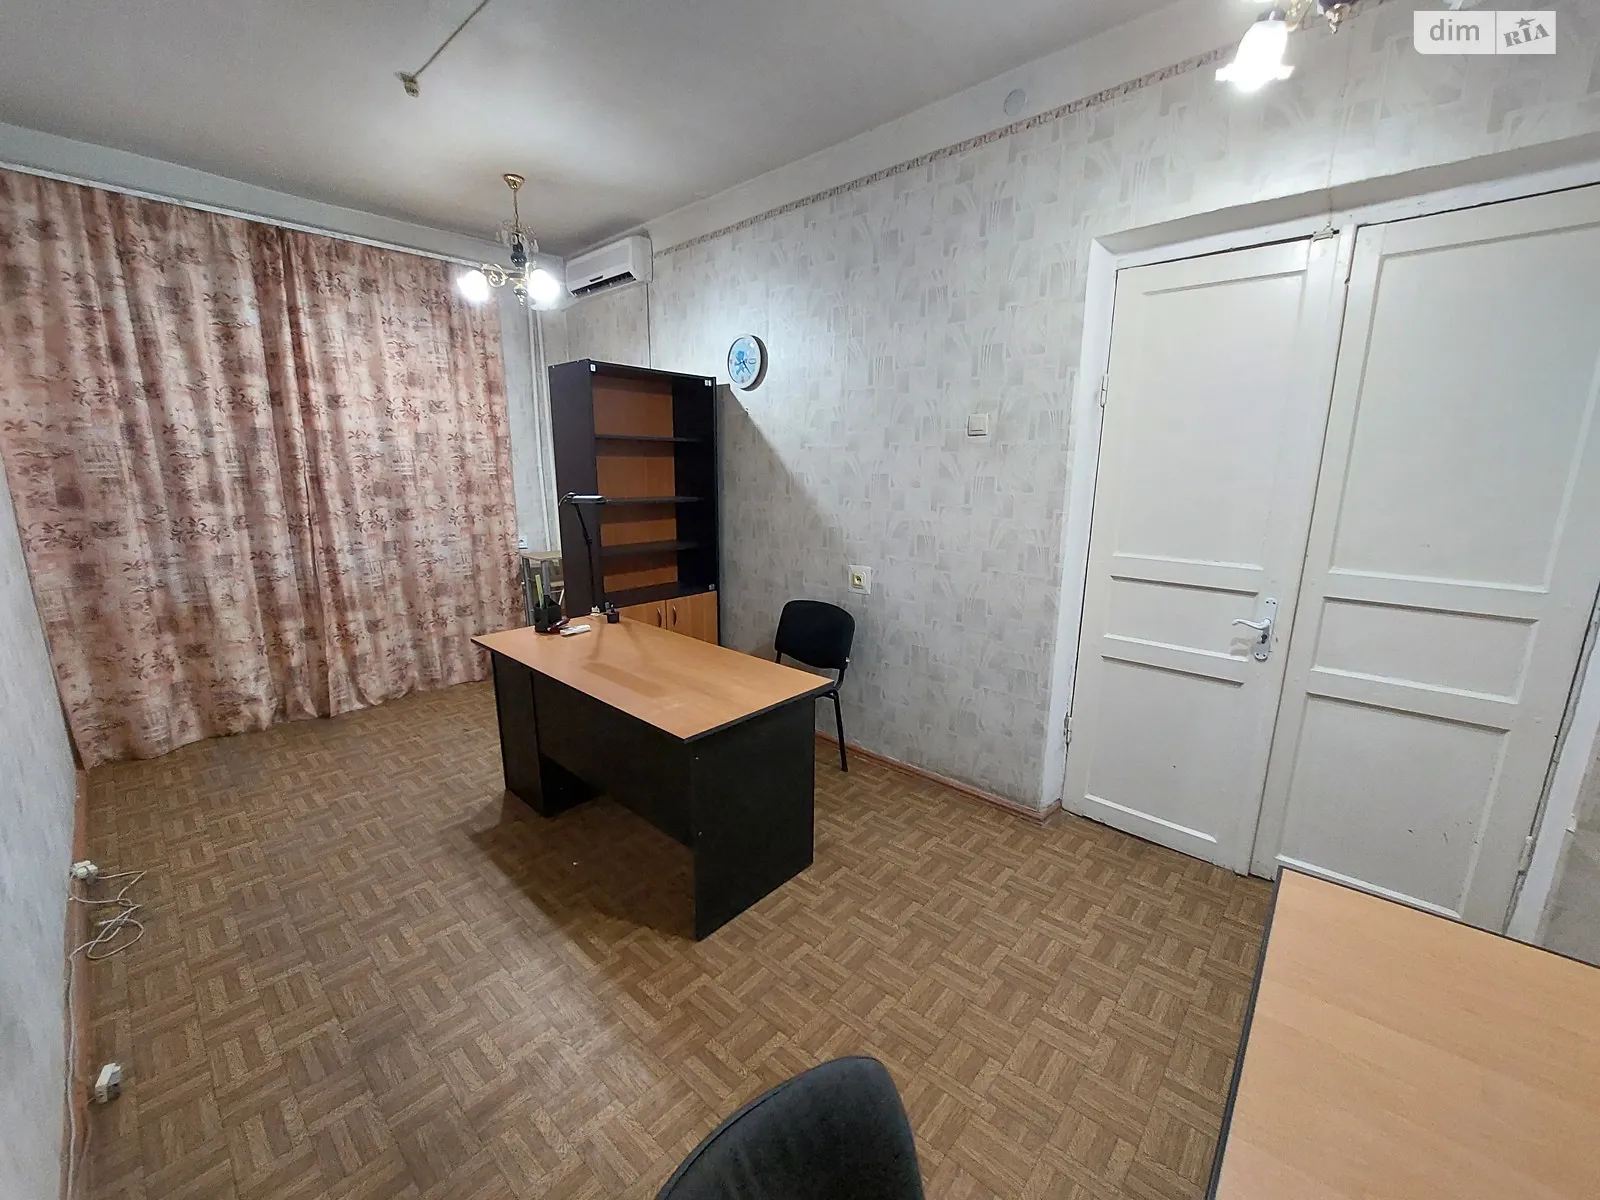 Сдается в аренду офис 33 кв. м в бизнес-центре, цена: 5000 грн